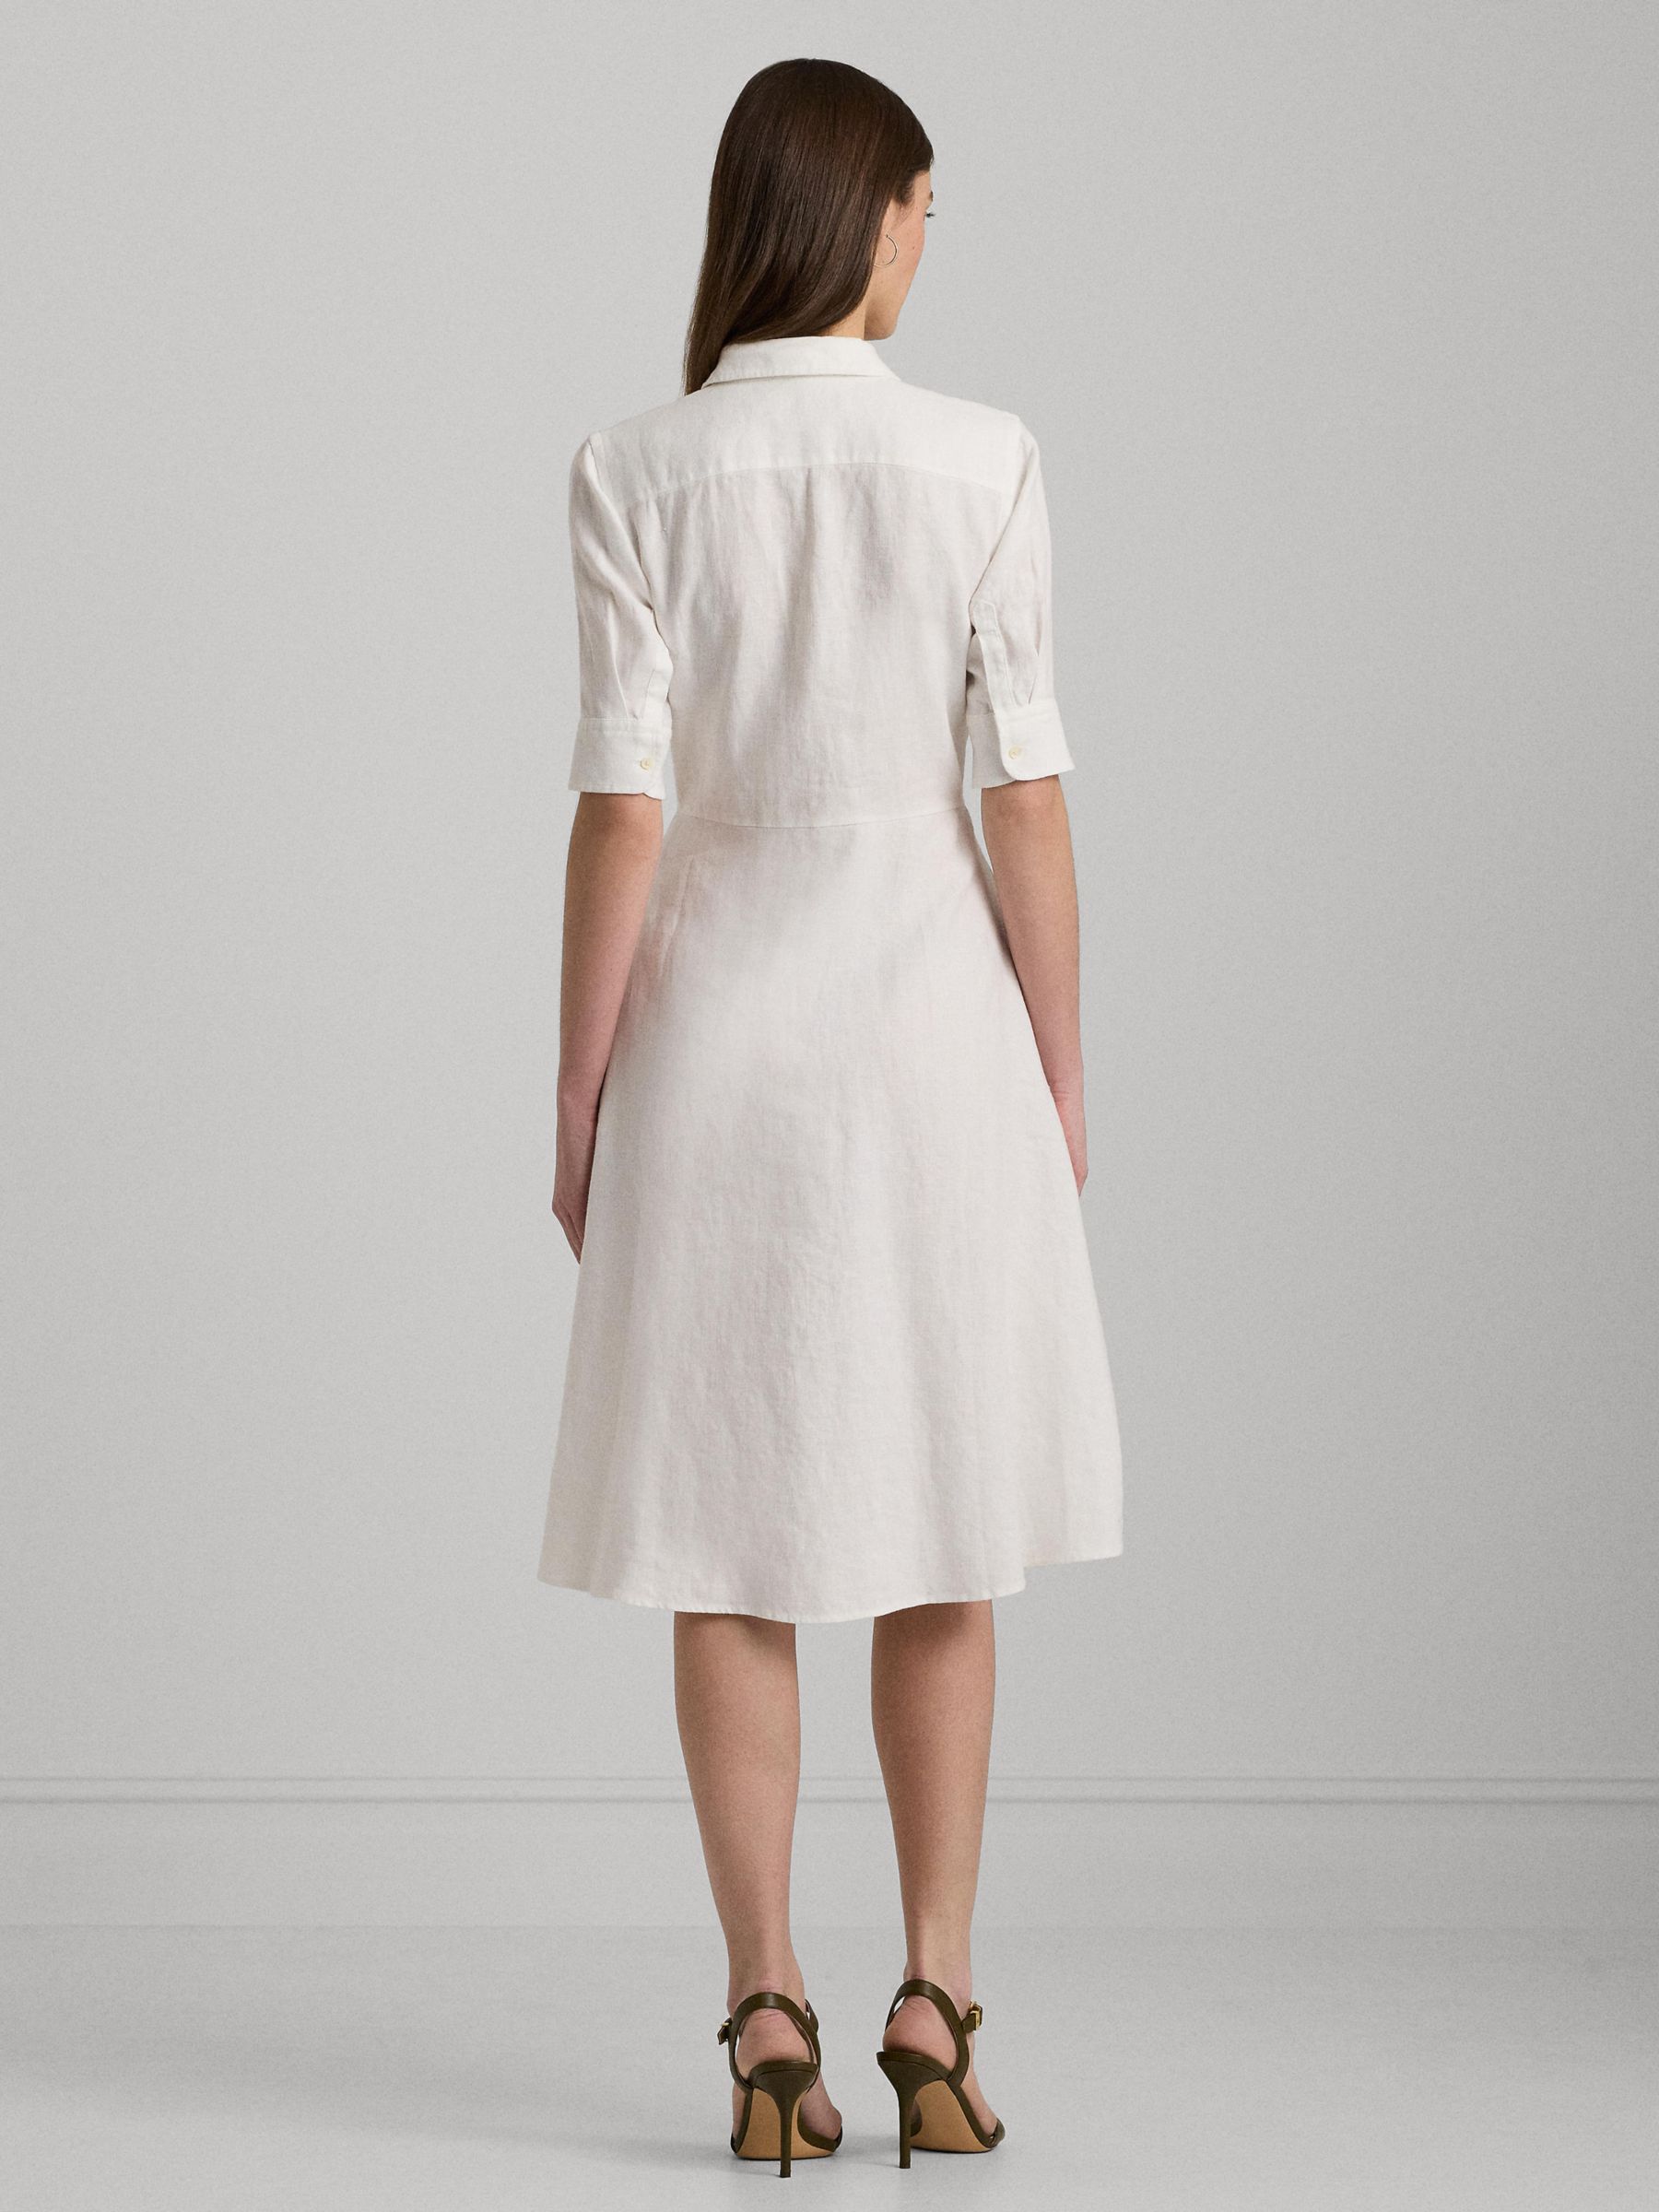 Lauren Ralph Lauren Wakana Linen Shirt Dress, White, 10